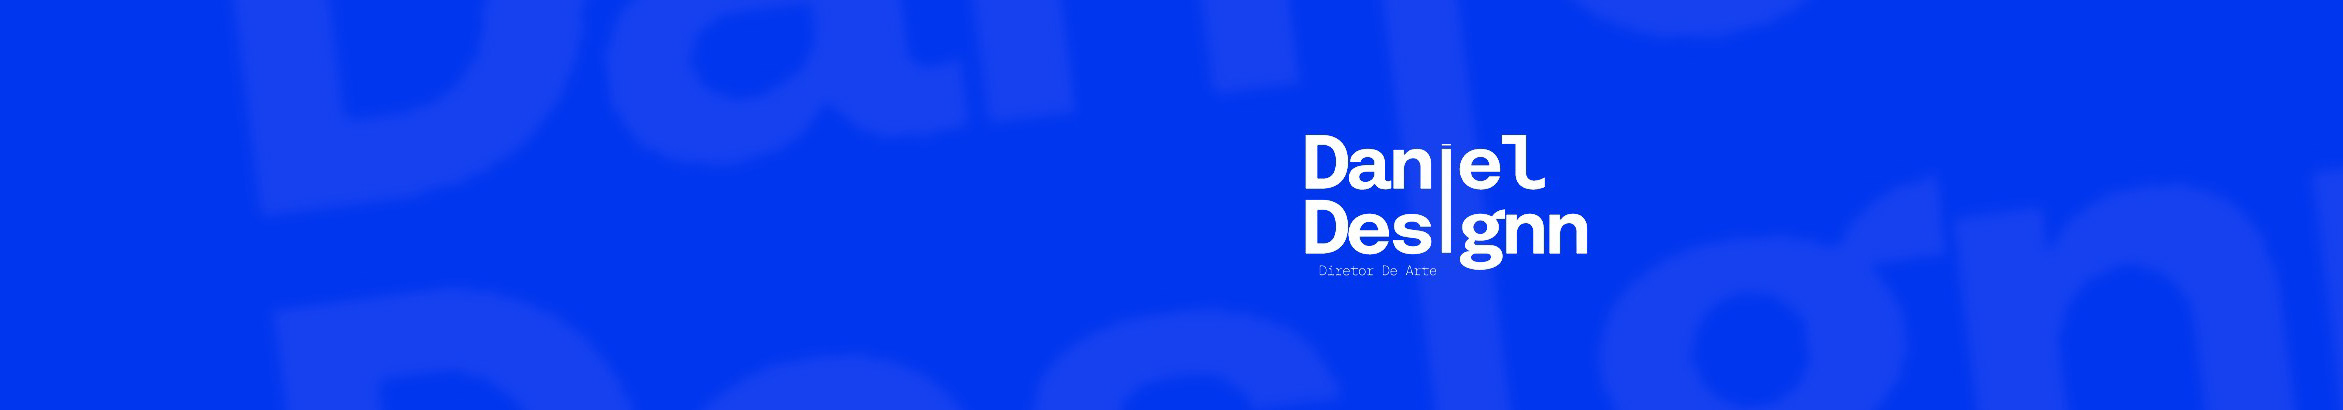 Daniel Designn's profile banner